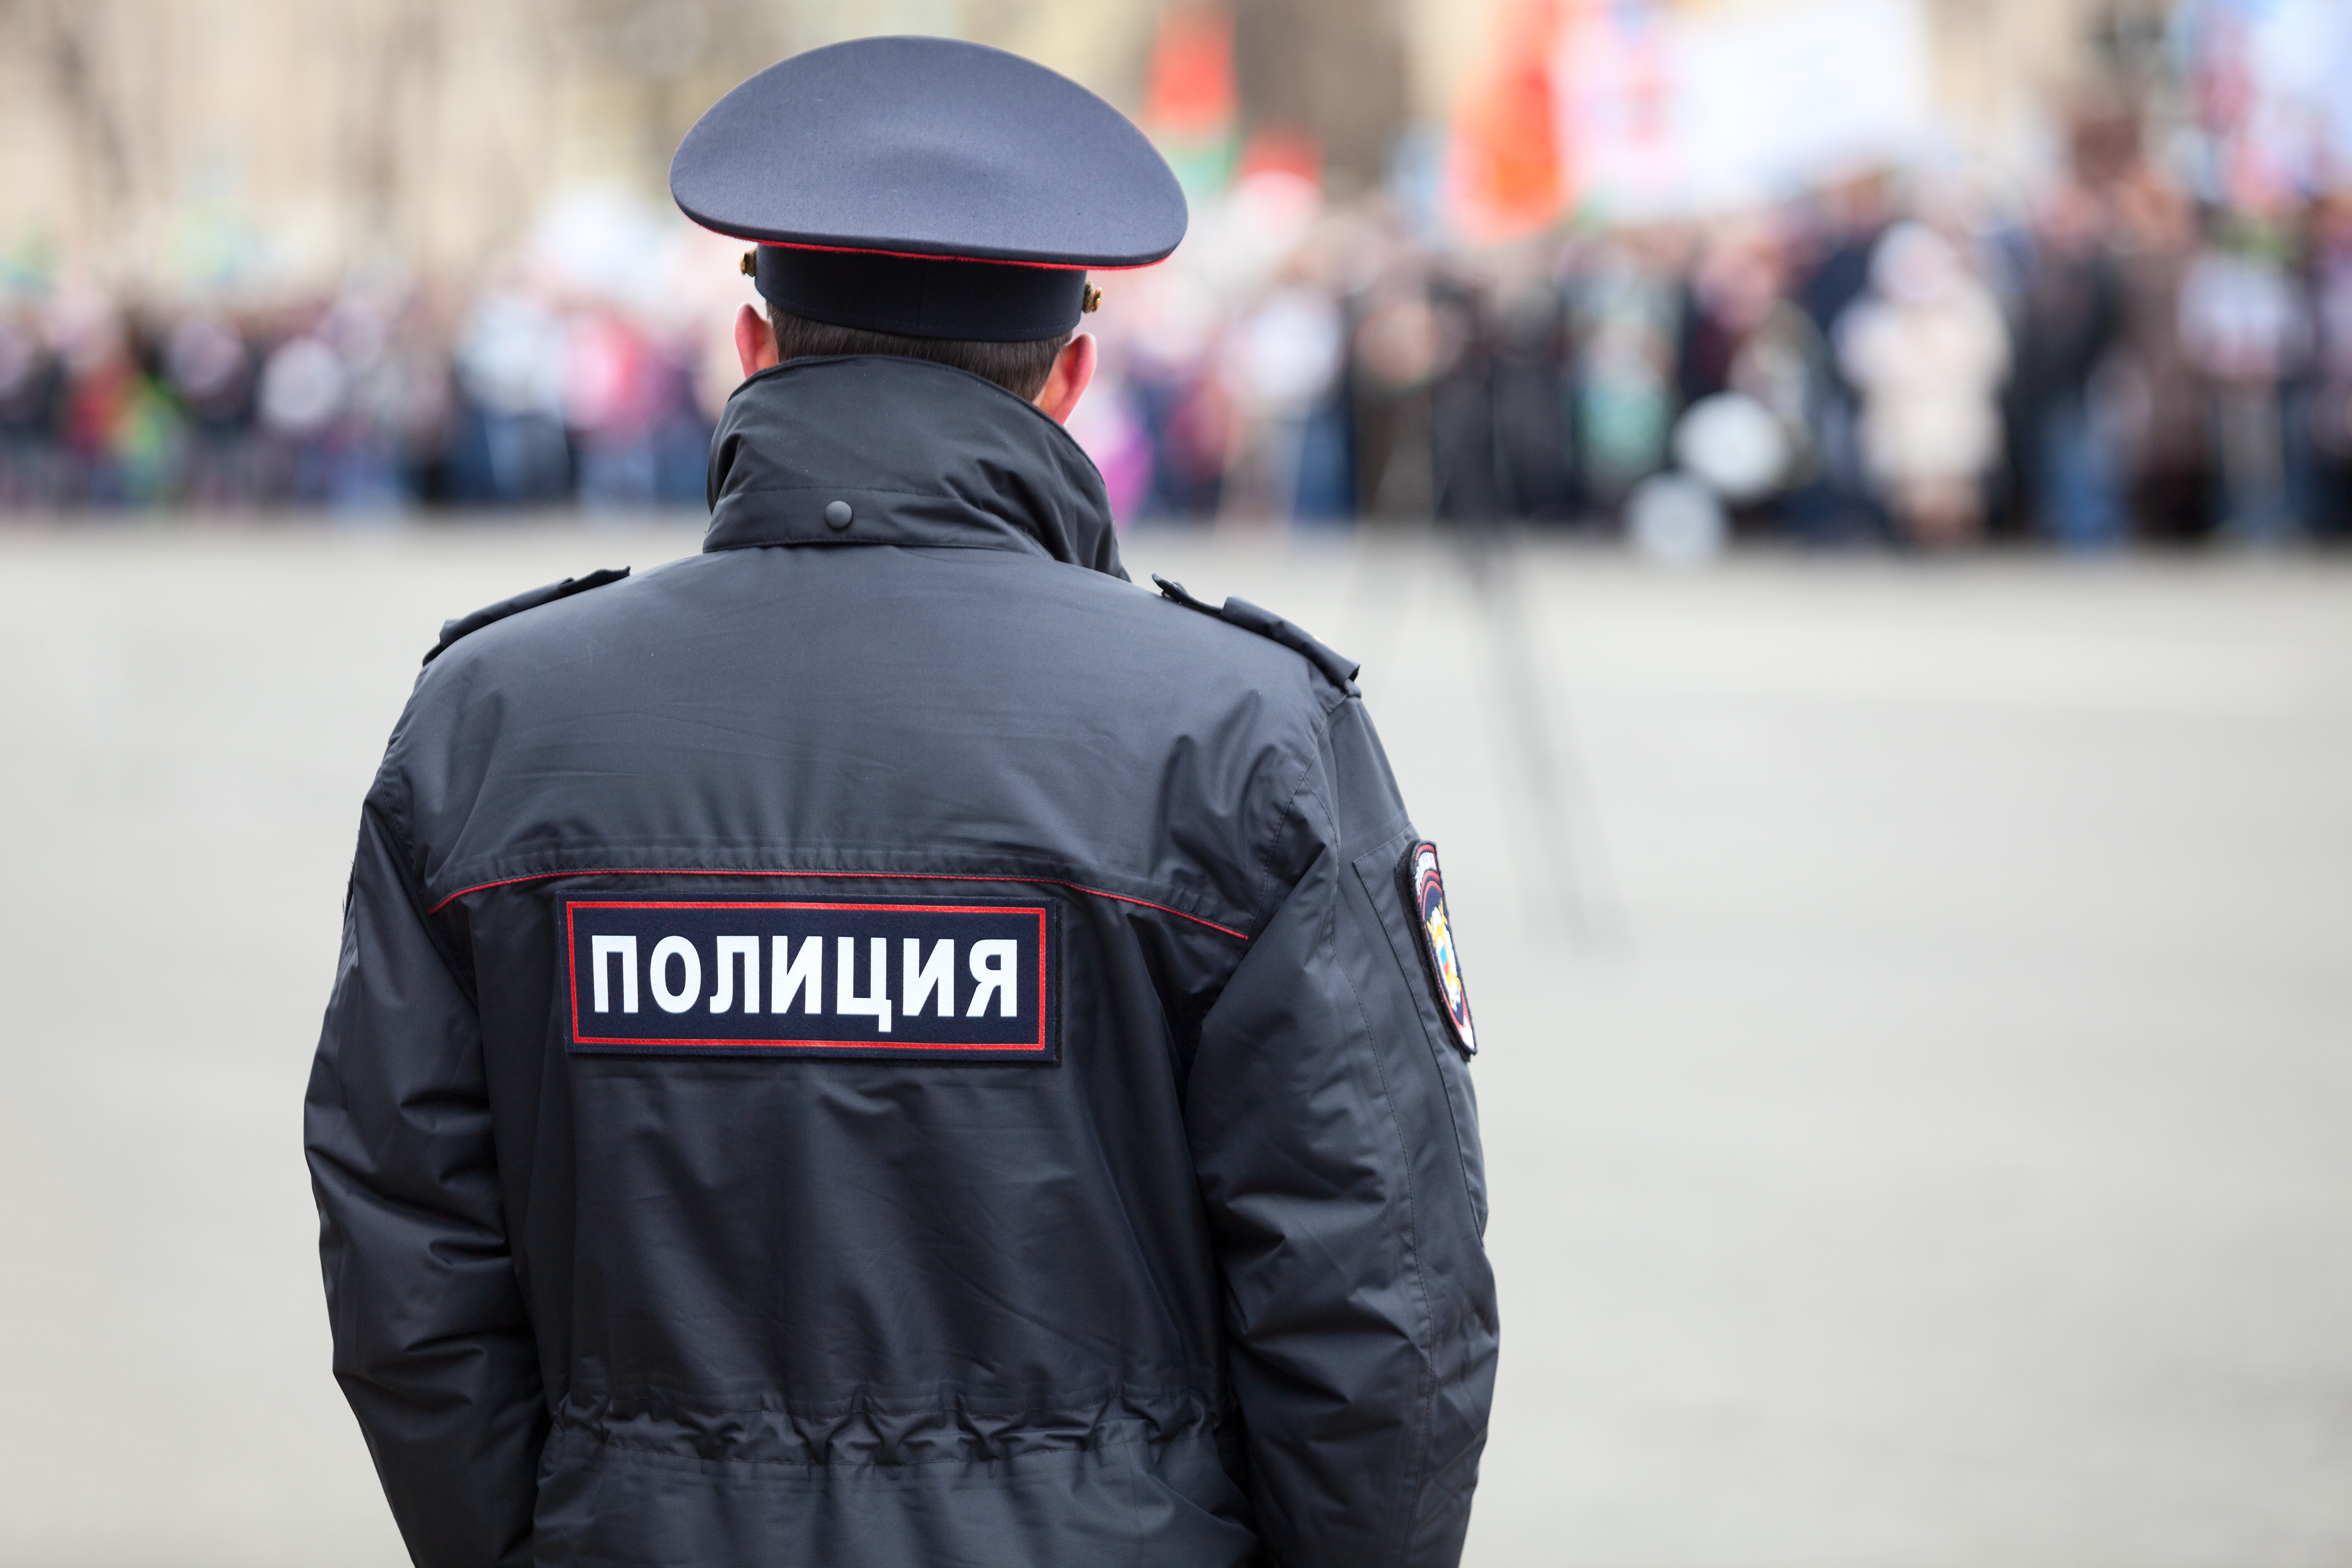 Poliţia rusă l-a reţinut pe fratele lui Aleksei Navalnîi, după o serie de percheziţii la Moscova